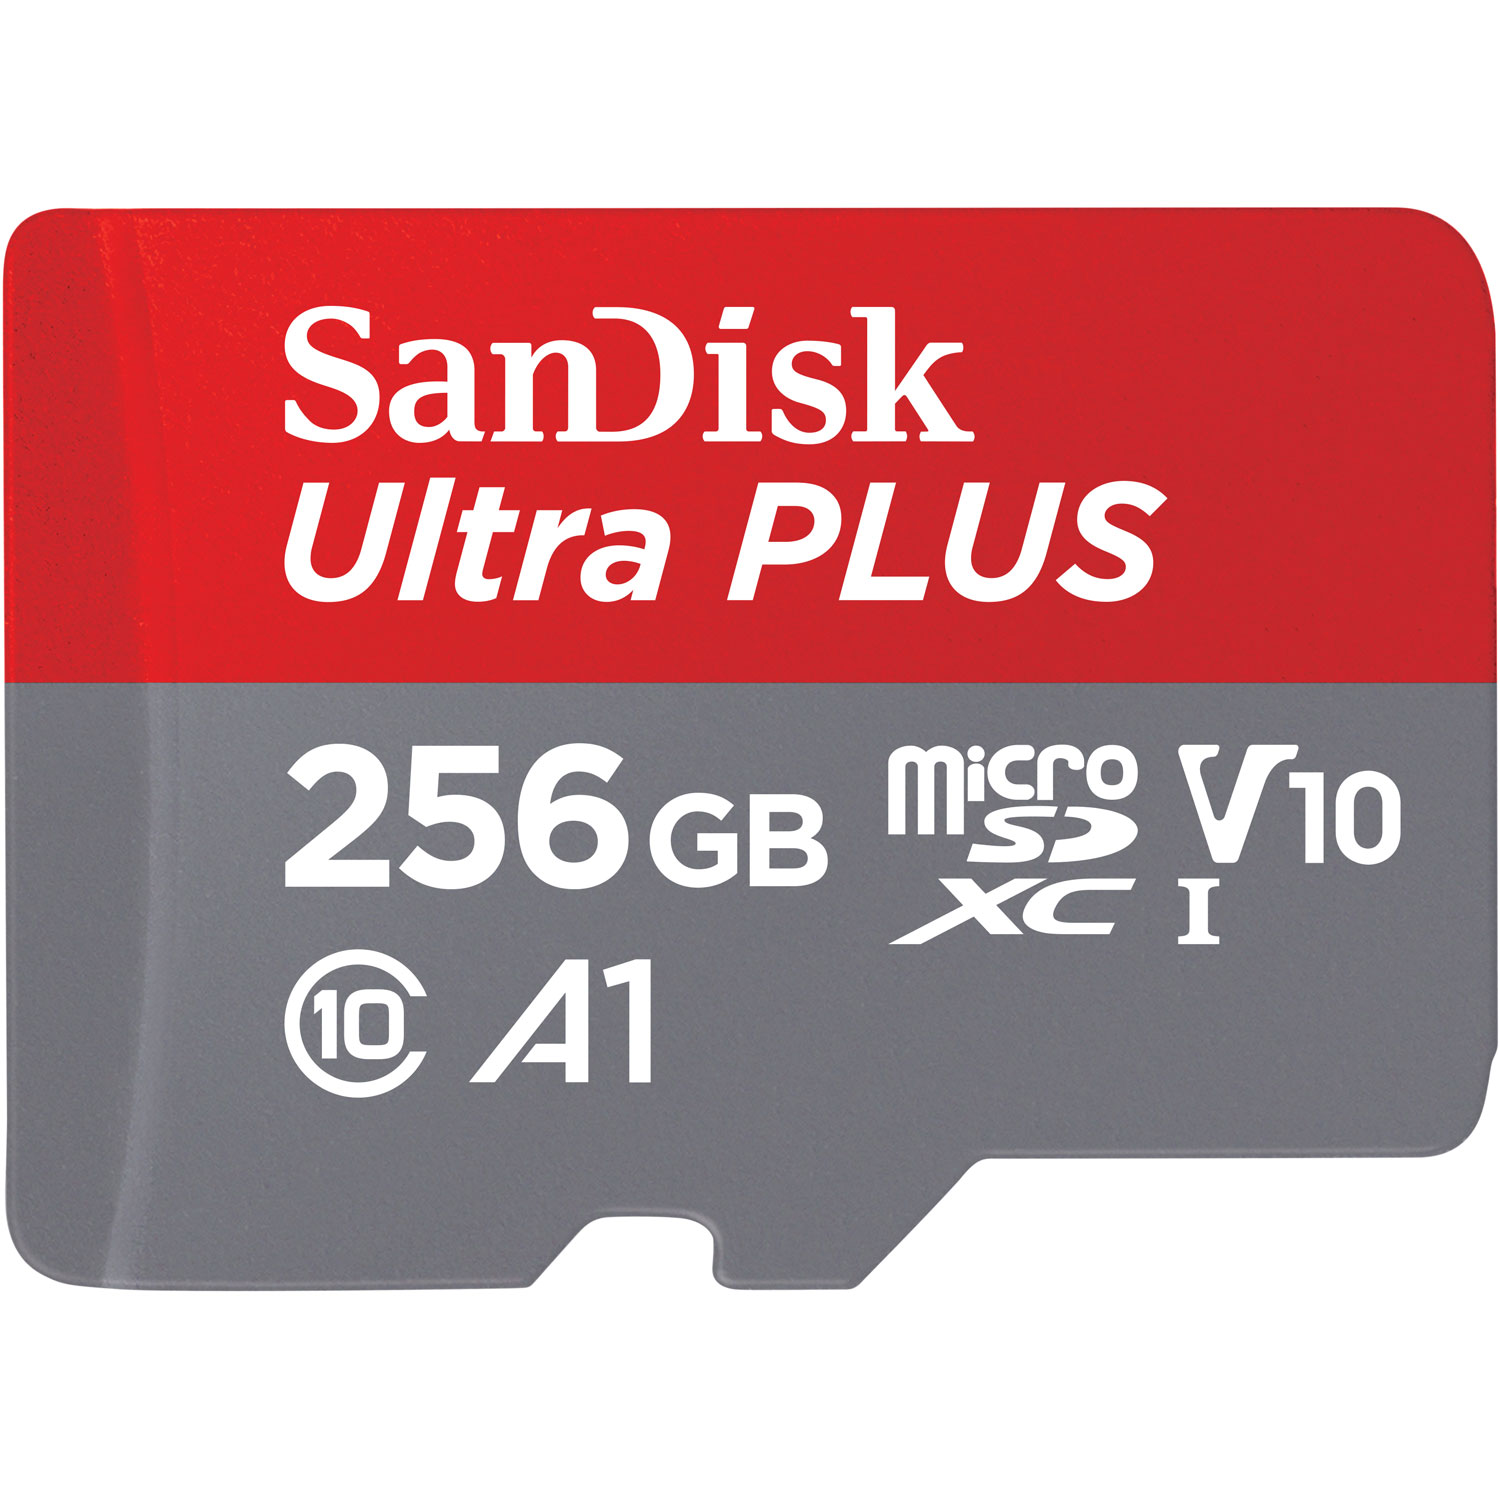 SanDisk Ultra PLUS V10 256GB 150MB/s microSDXC Memory Card